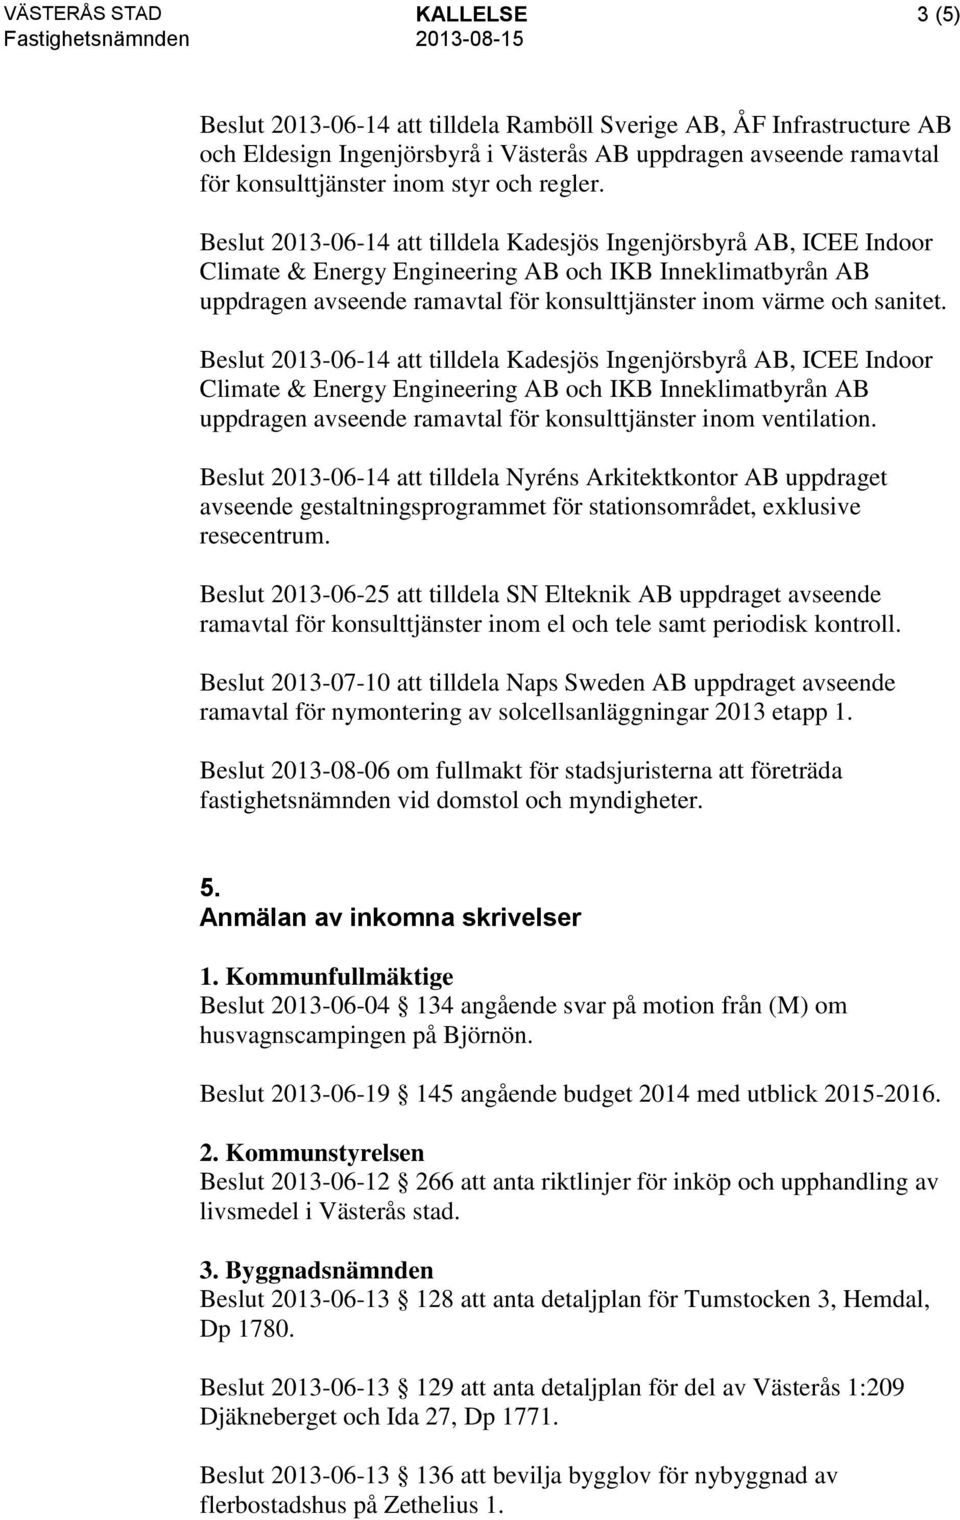 Beslut 2013-06-14 att tilldela Kadesjös Ingenjörsbyrå AB, ICEE Indoor Climate & Energy Engineering AB och IKB Inneklimatbyrån AB uppdragen avseende ramavtal för konsulttjänster inom värme och sanitet.